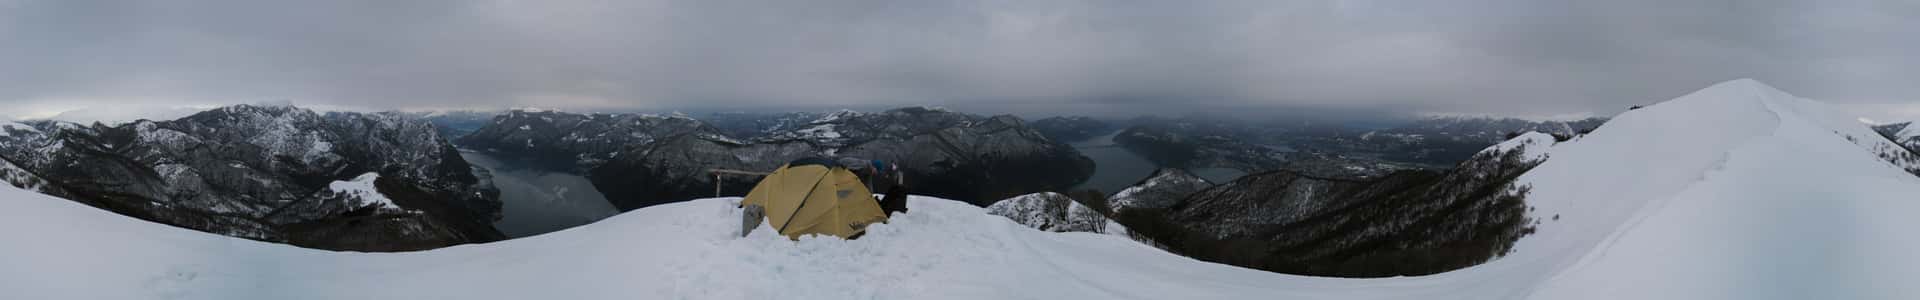 tent in the snow on Monte Boglia